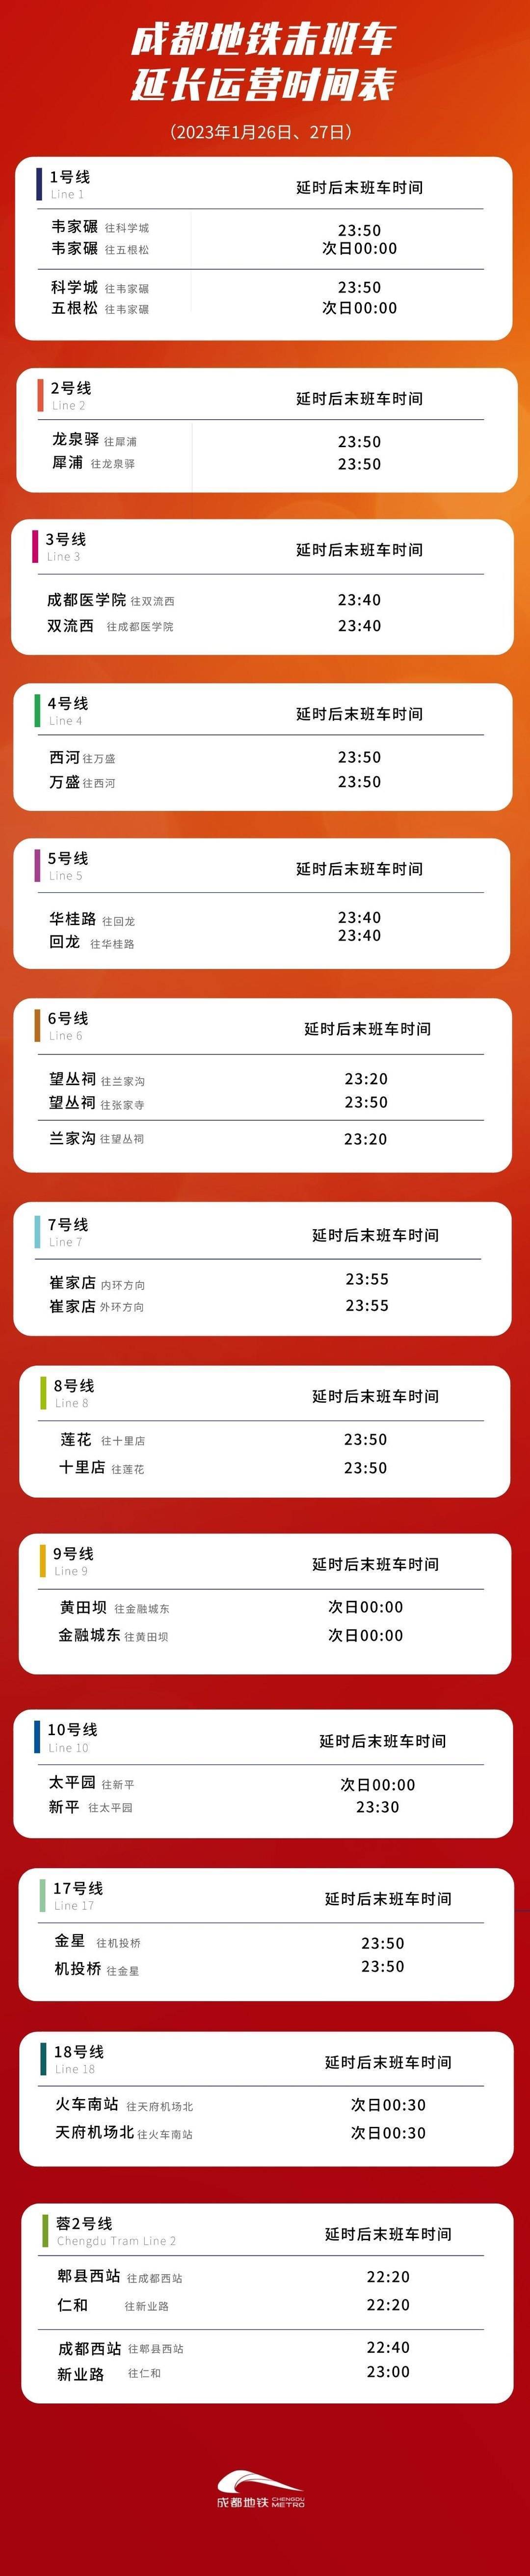 成都地铁1月26日（初五）1月27日（初六）延长运营服务时间50-60分钟